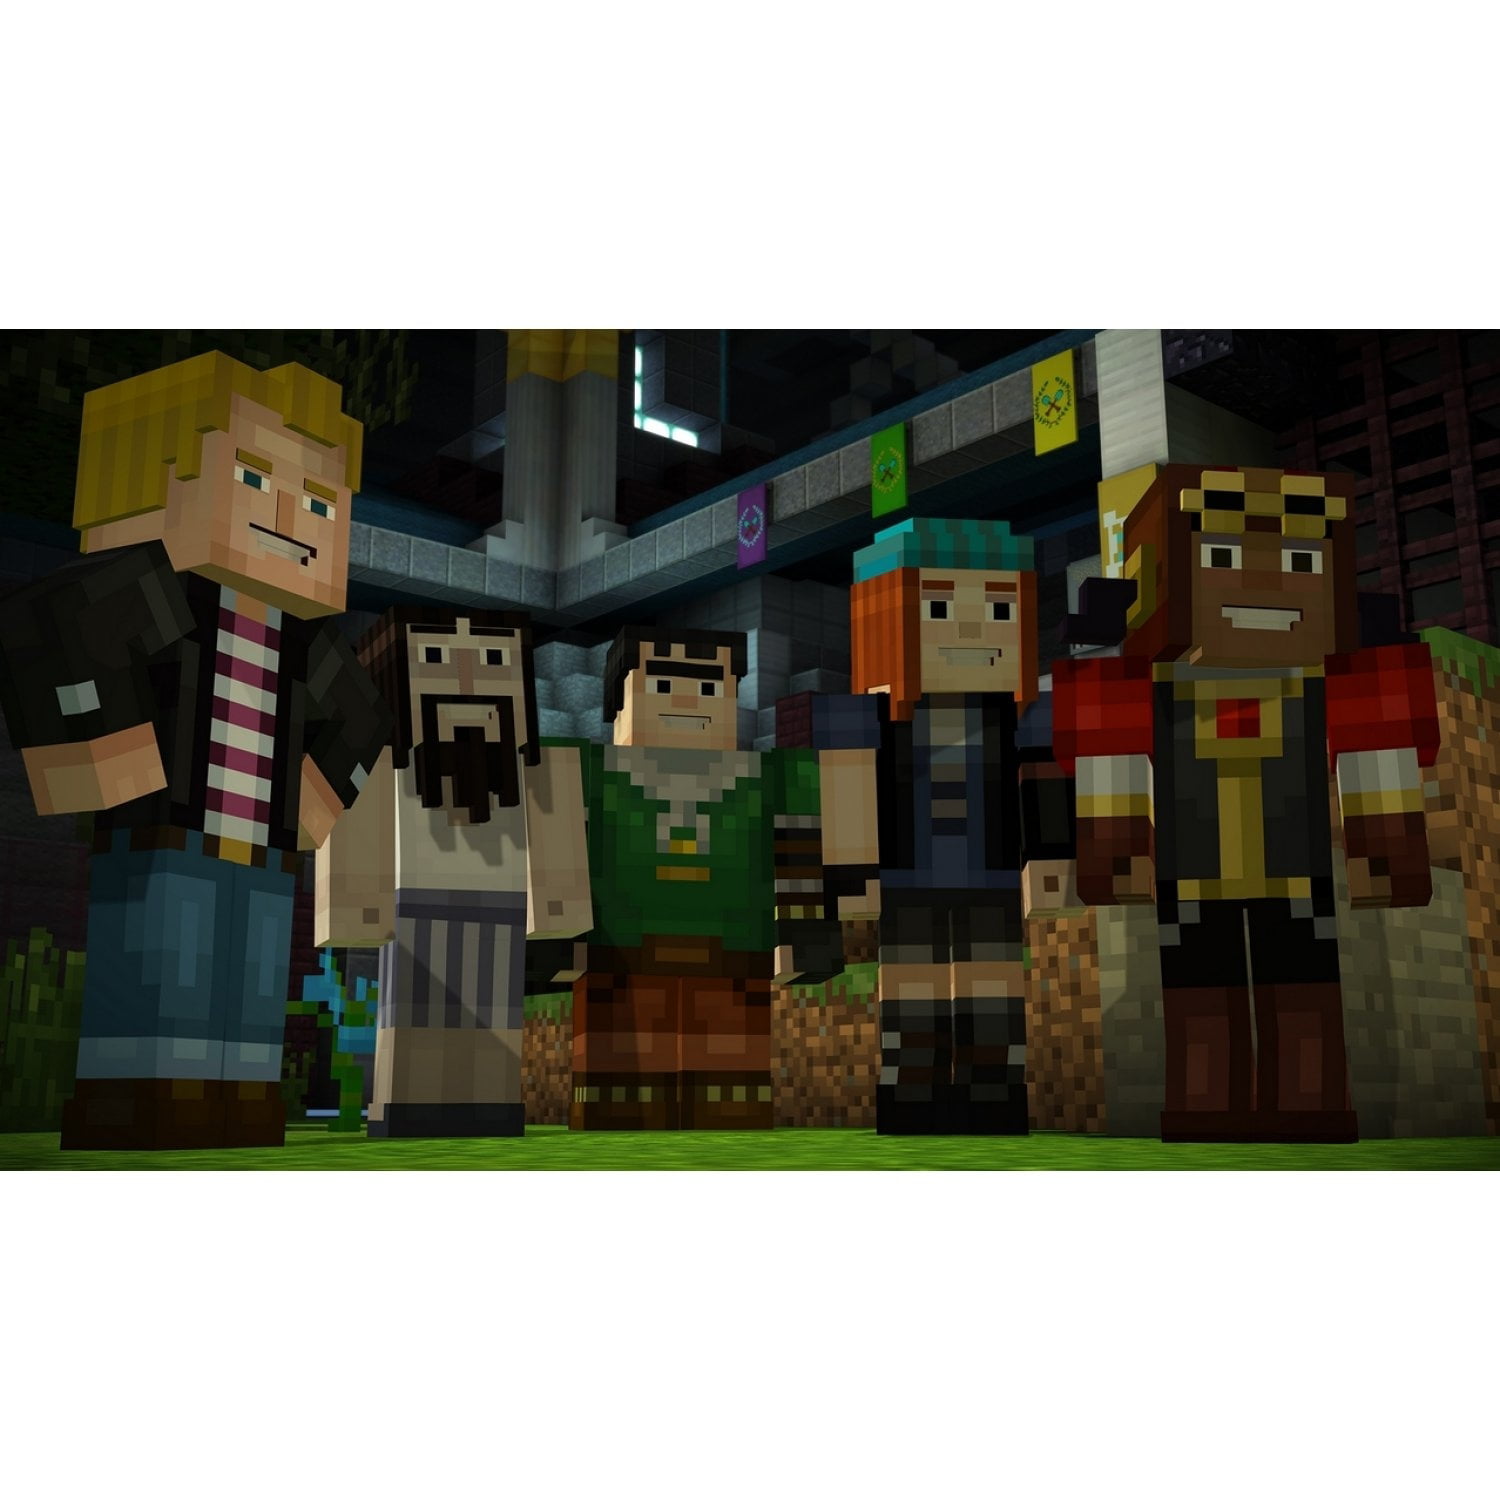 Jogo Minecraft Season Two Story Mode The Telltale Series - Xbox 360  Seminovo - SL Shop - A melhor loja de smartphones, games, acessórios e  assistência técnica